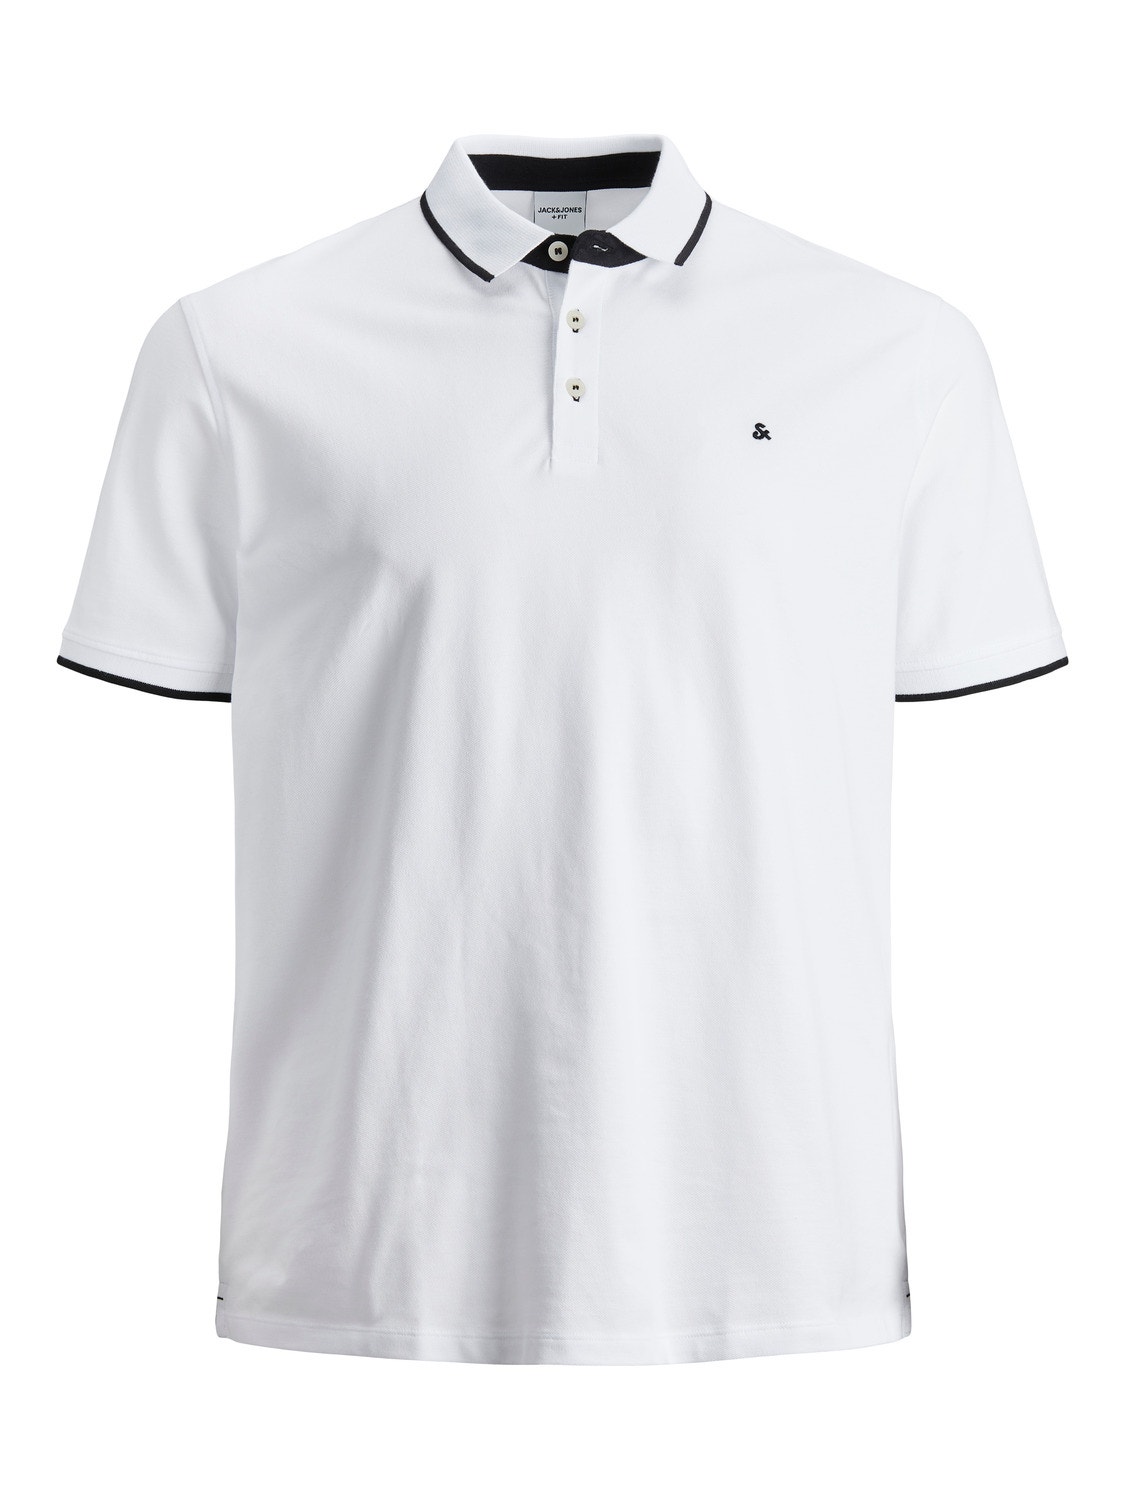 Jack & Jones Plus Size Plain T-shirt -White - 12143859